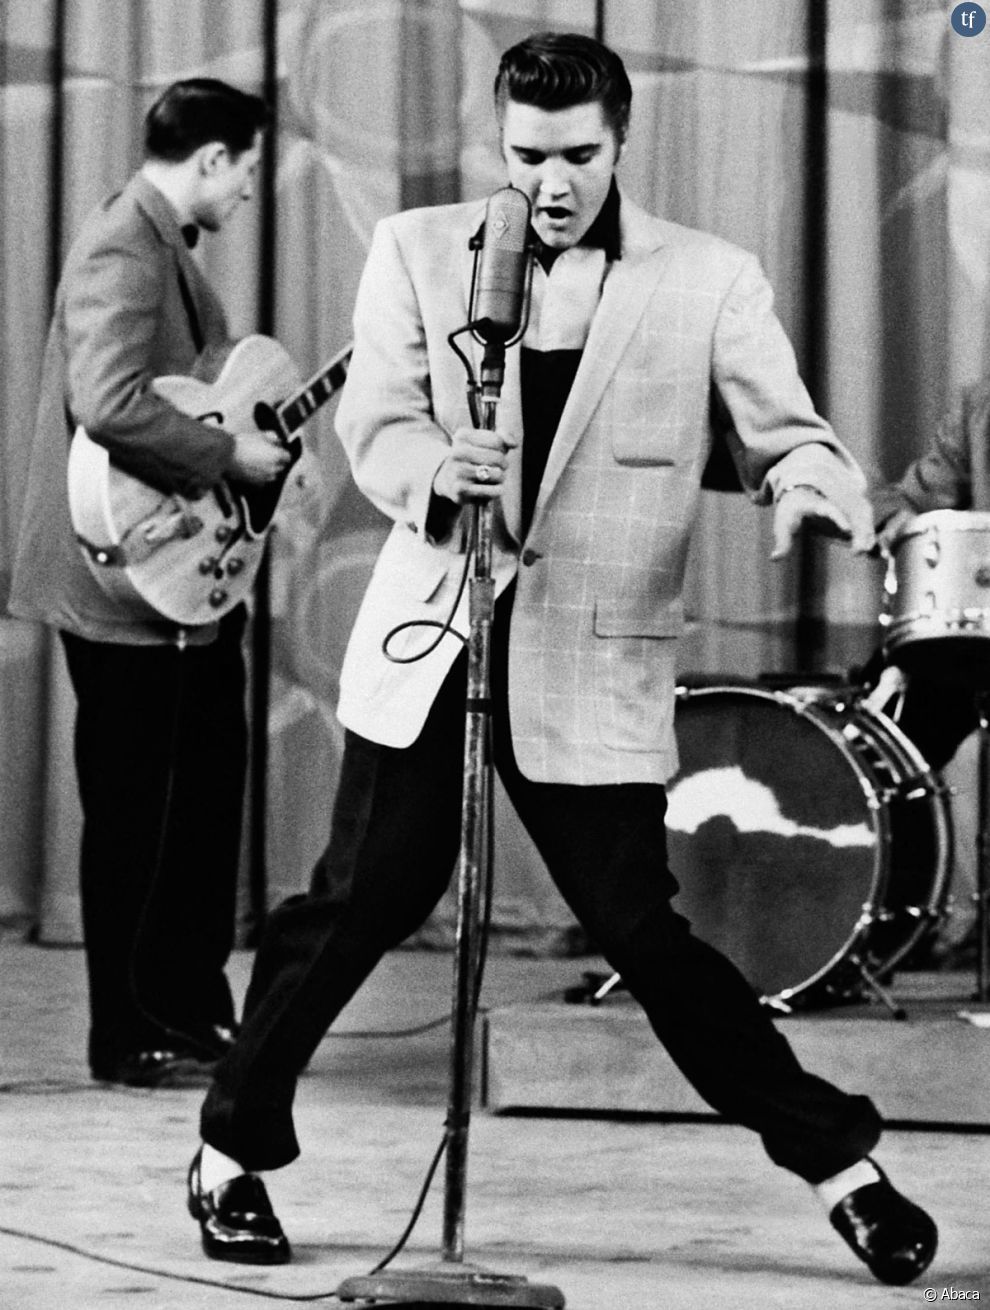   Forcément rock n roll, car on devine naturellement d&#039;où lui est venue cette punchline : de la musique rock des années cinquante bien sûr. Celle   d&#039;Elvis Presley !  